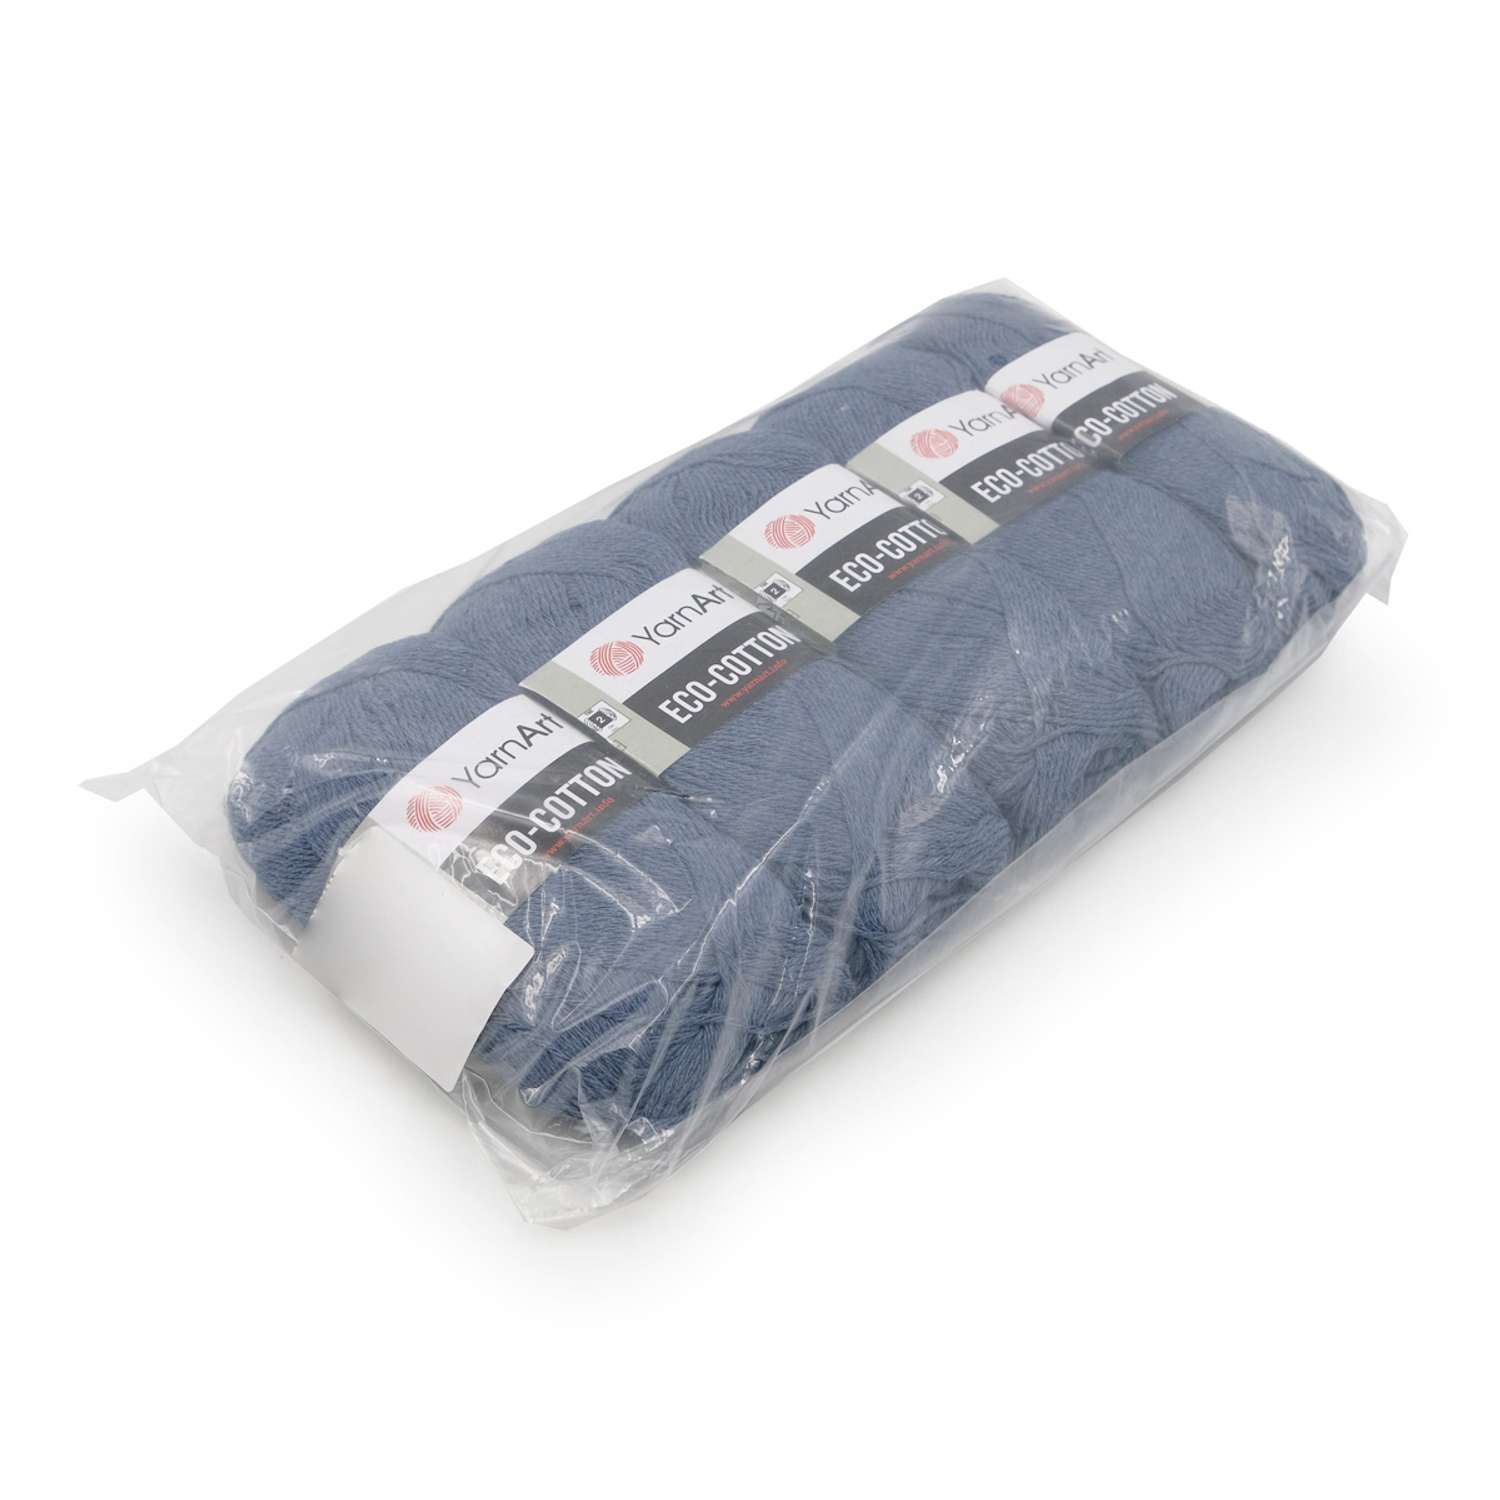 Пряжа YarnArt Eco Cotton комфортная для летних вещей 100 г 220 м 773 джинс 5 мотков - фото 8